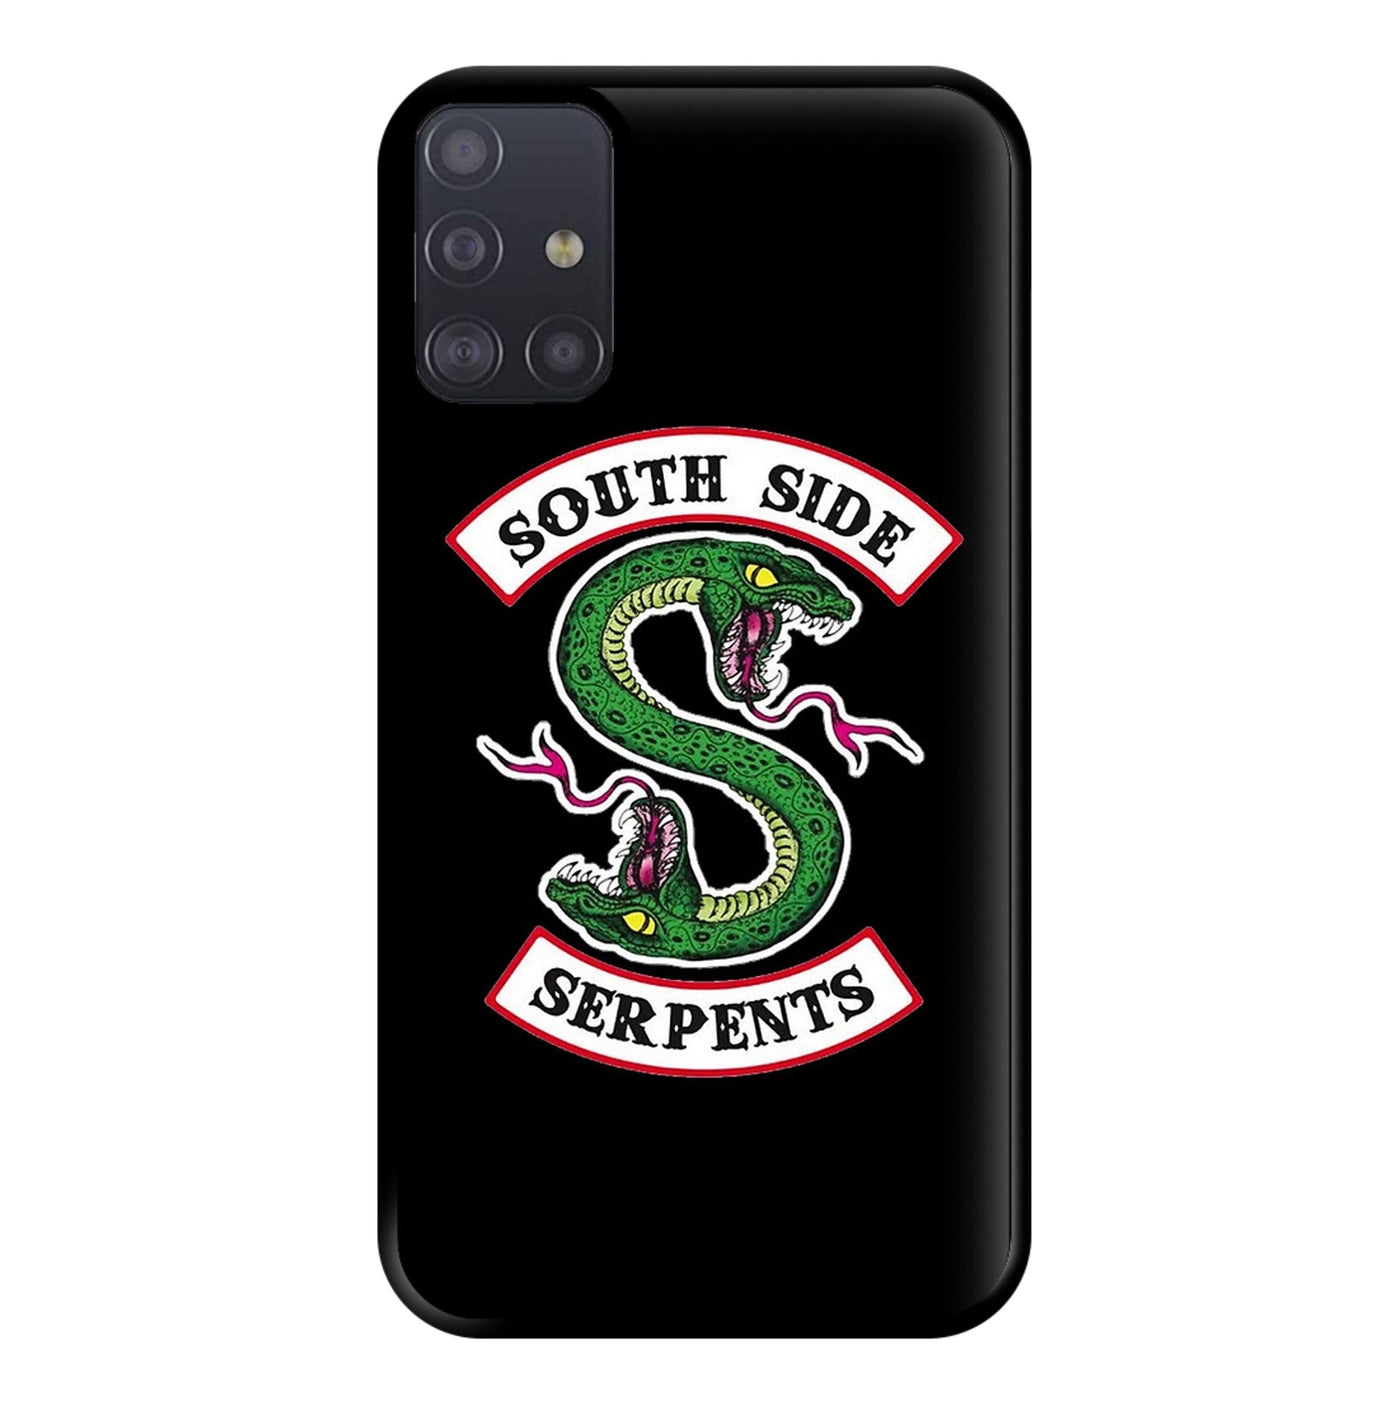 Southside Serpents - Riverdale Phone Case